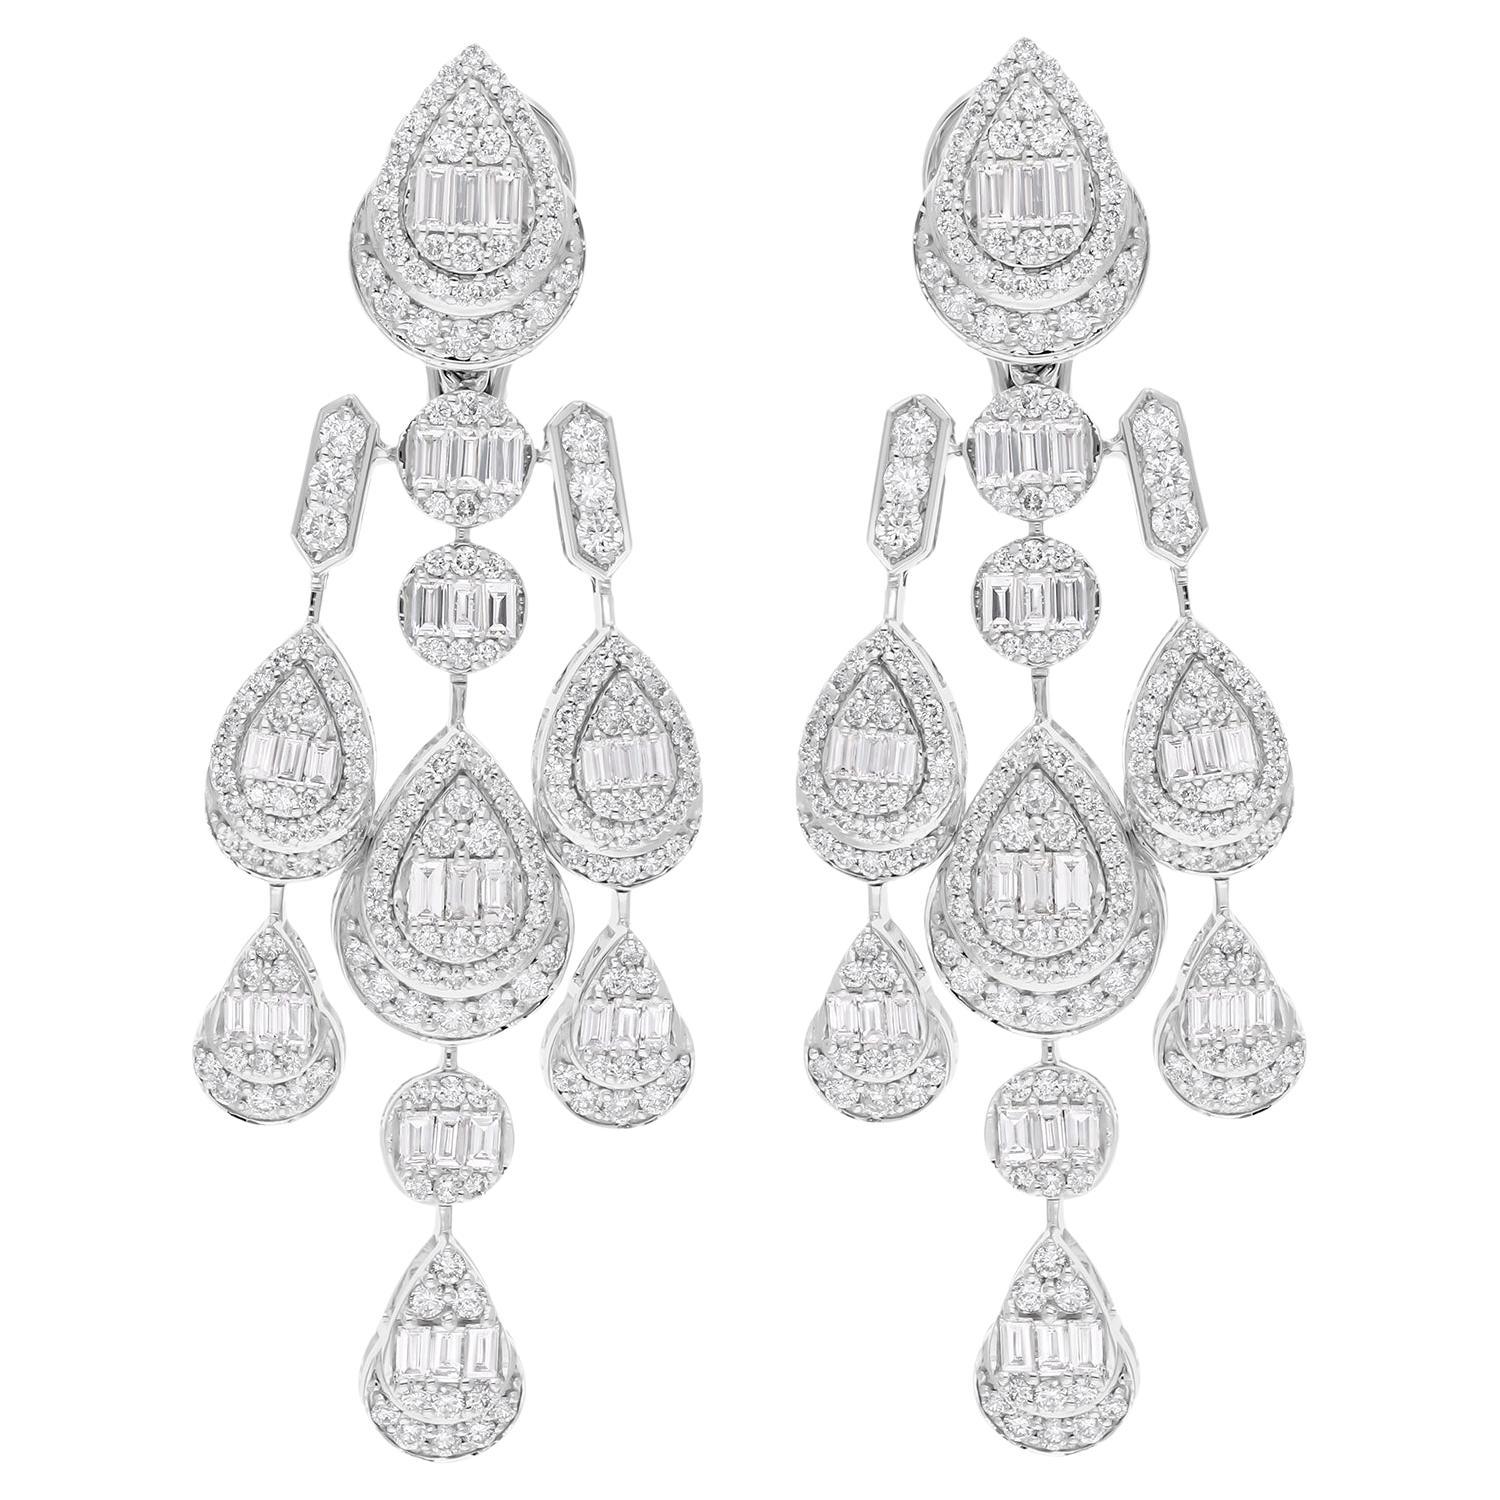 Baguette Diamond Chandelier Earrings Solid 18 Karat White Gold Handmade Jewelry For Sale